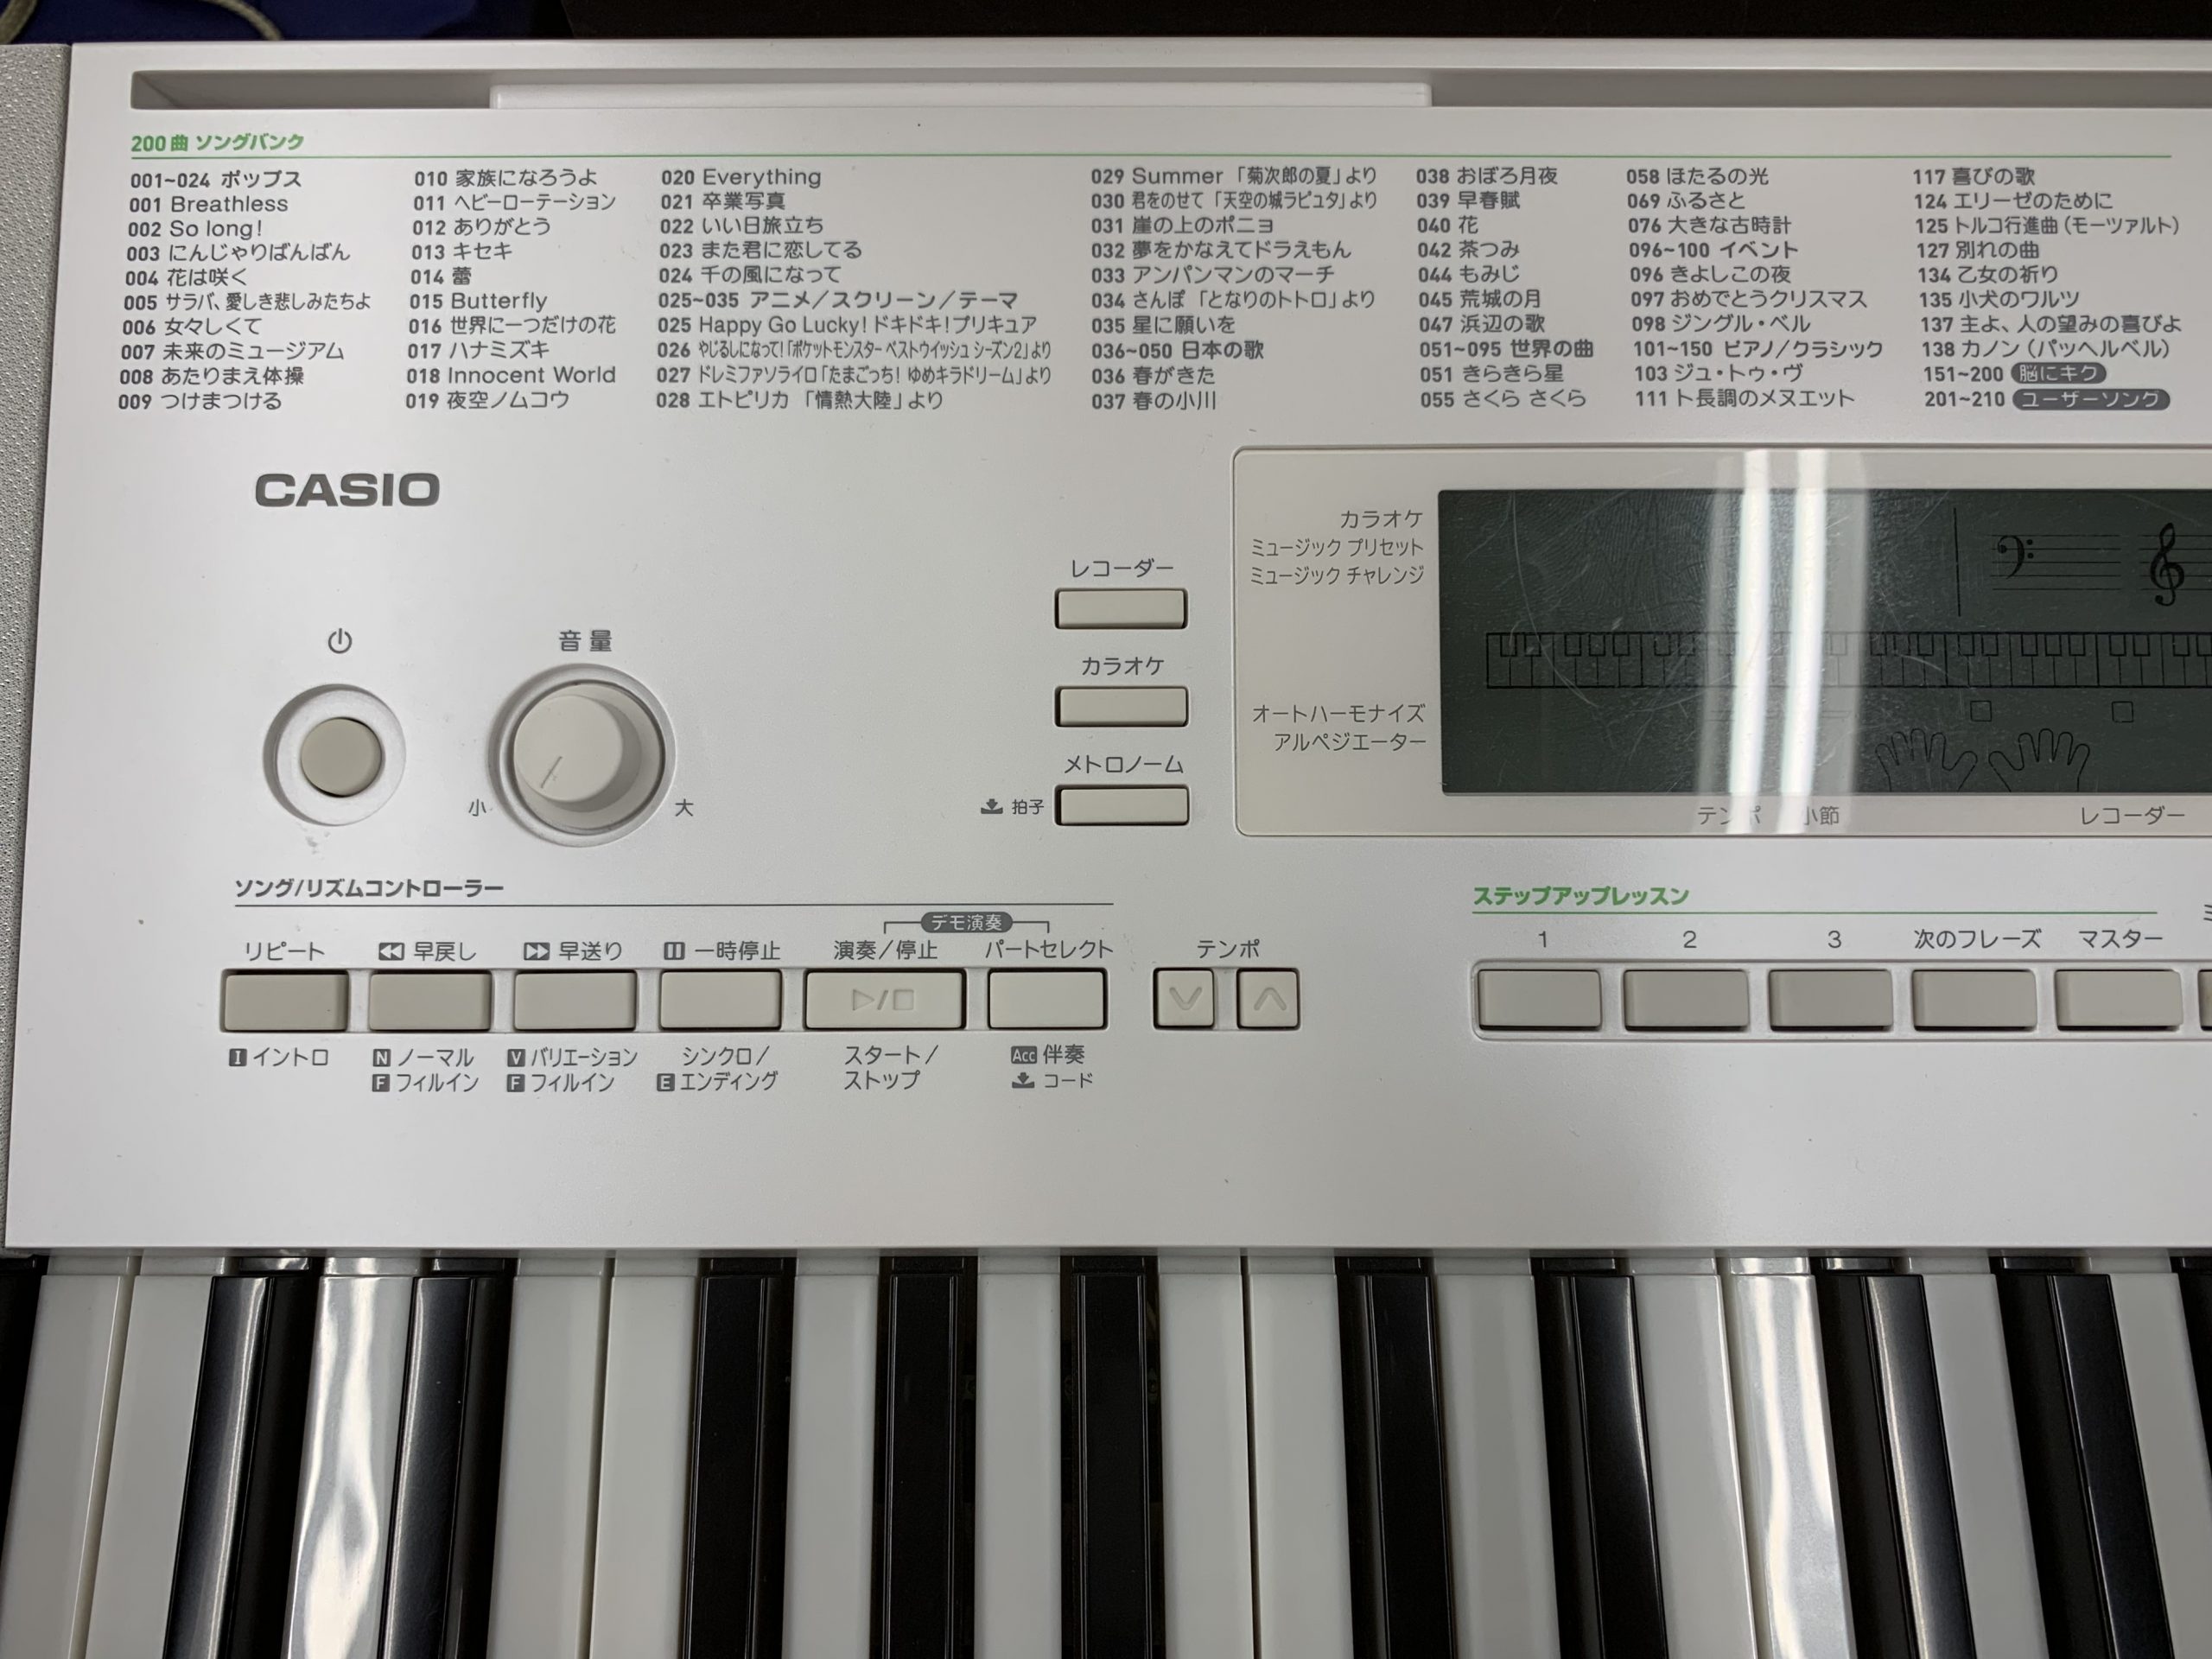 カシオ LK-218 電子ピアノ 光ナビゲーション - 鍵盤楽器